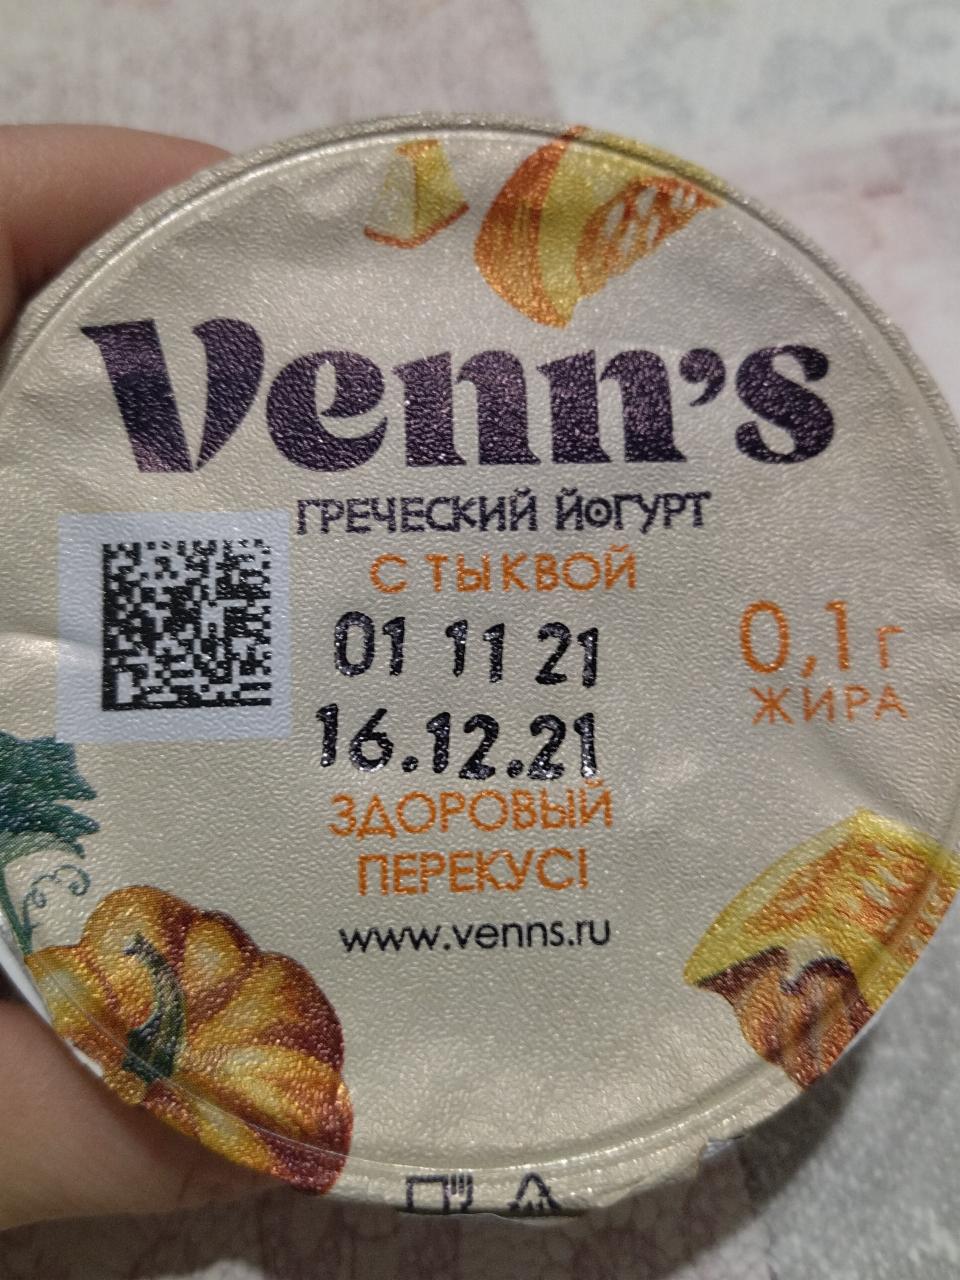 Фото - греческий йогурт с тыквой Venn's